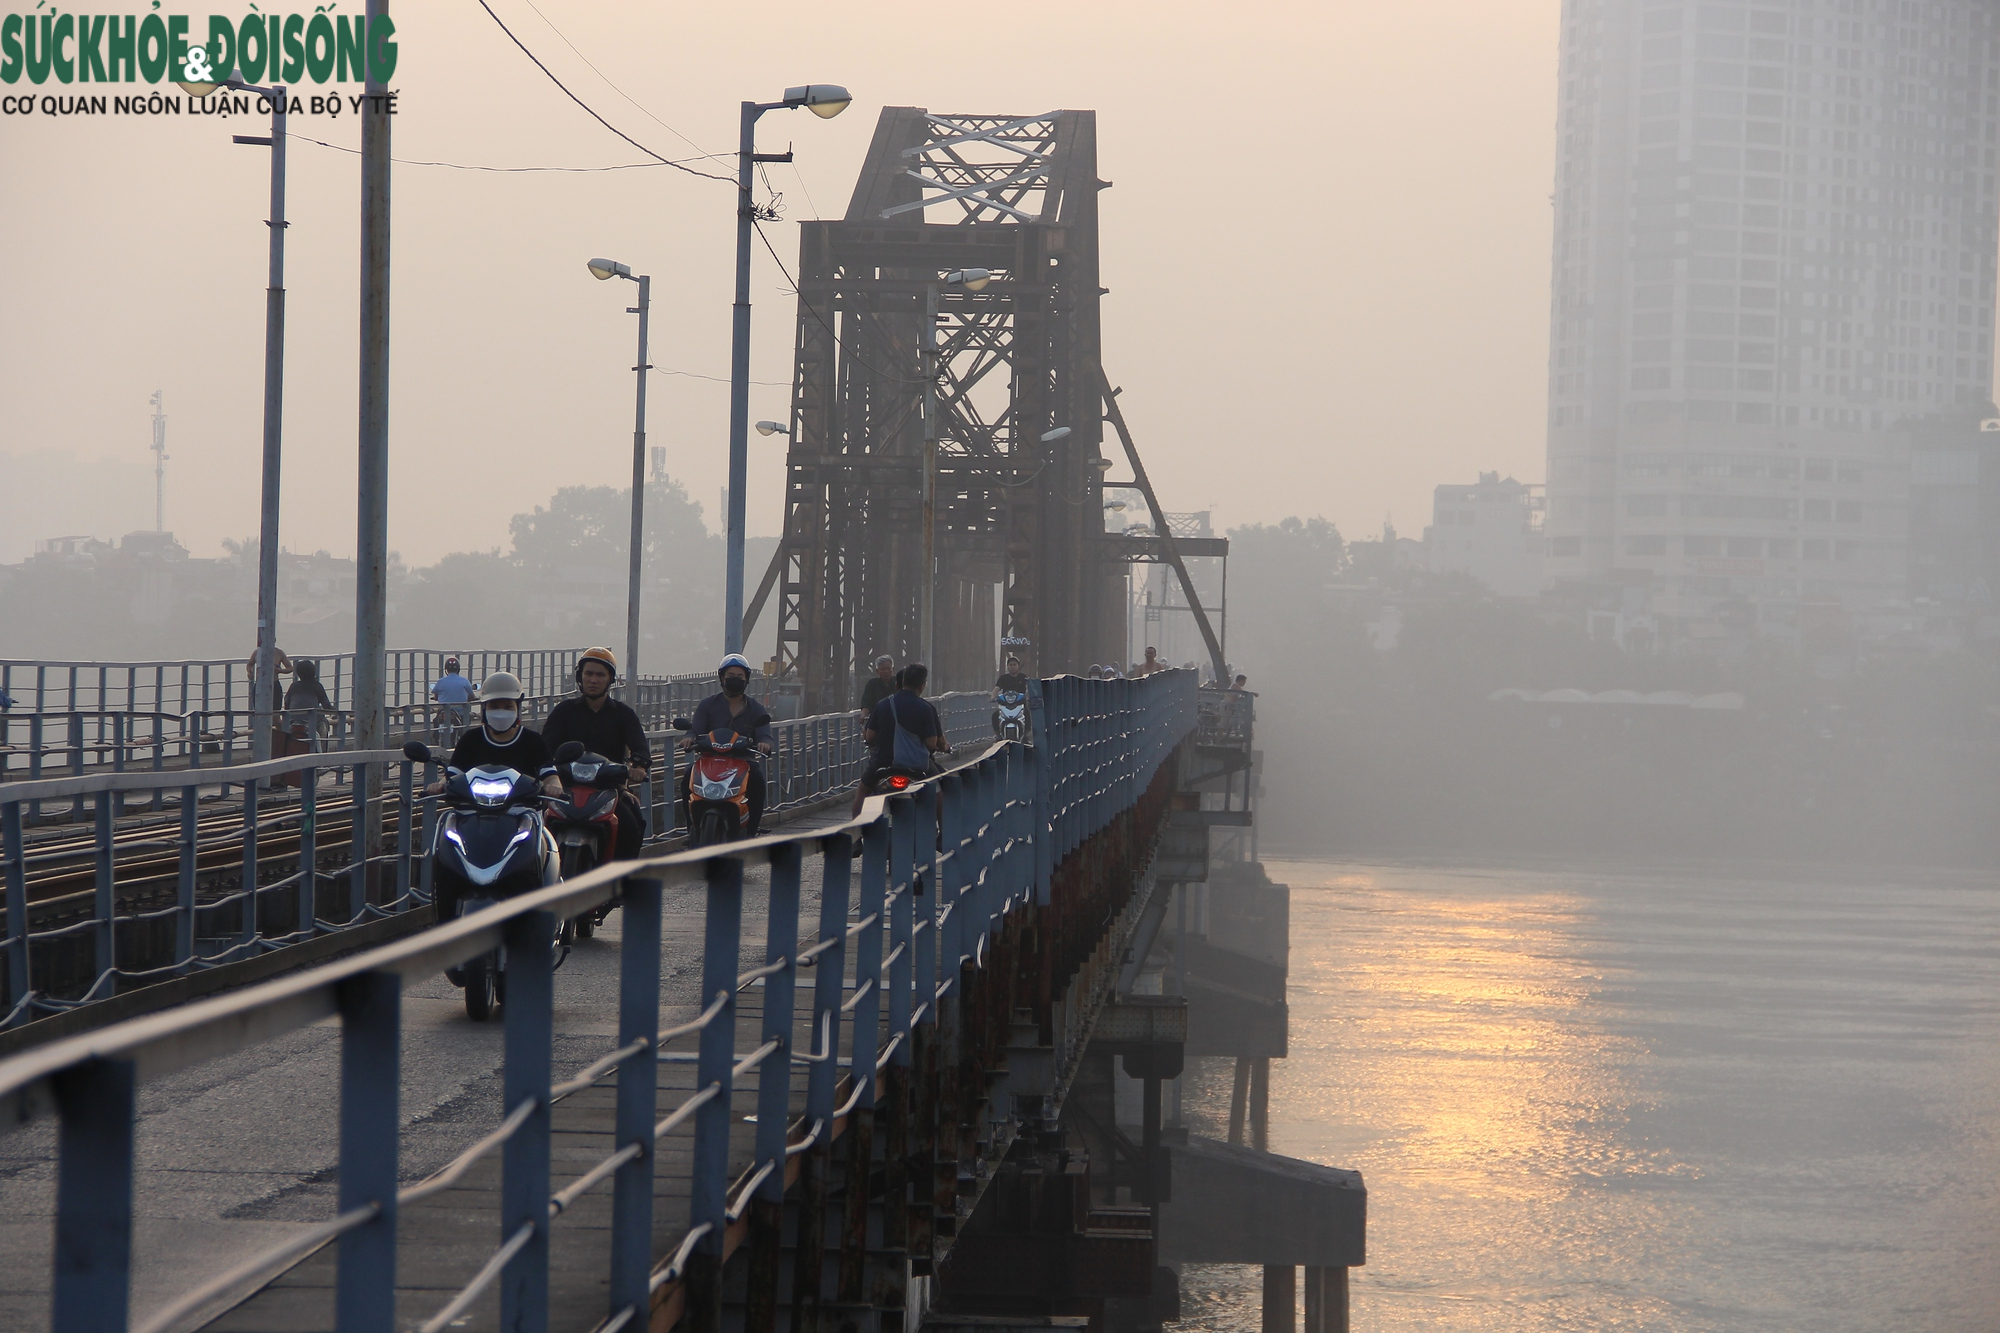 Công việc bảo dưỡng cầu Long Biên diễn ra từ 6 giờ sáng, ngay khi mặt trời mới ló rạng, các công nhân đường sắt đã có mặt trên cầu.